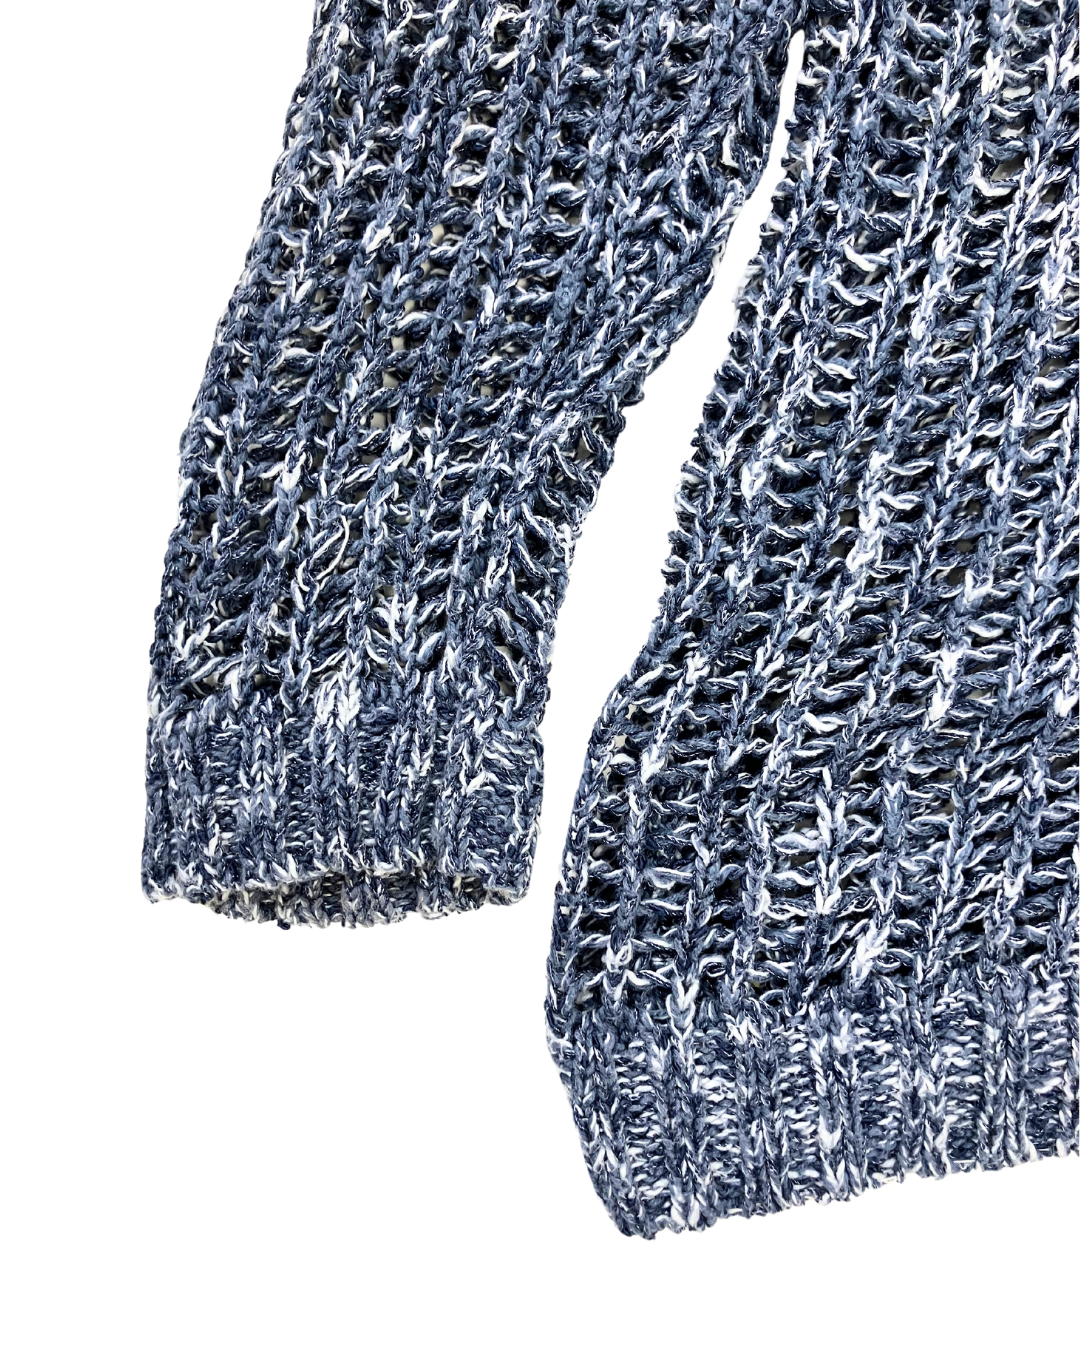 Jeans by Buffalo Blue Loose Knit Jumper